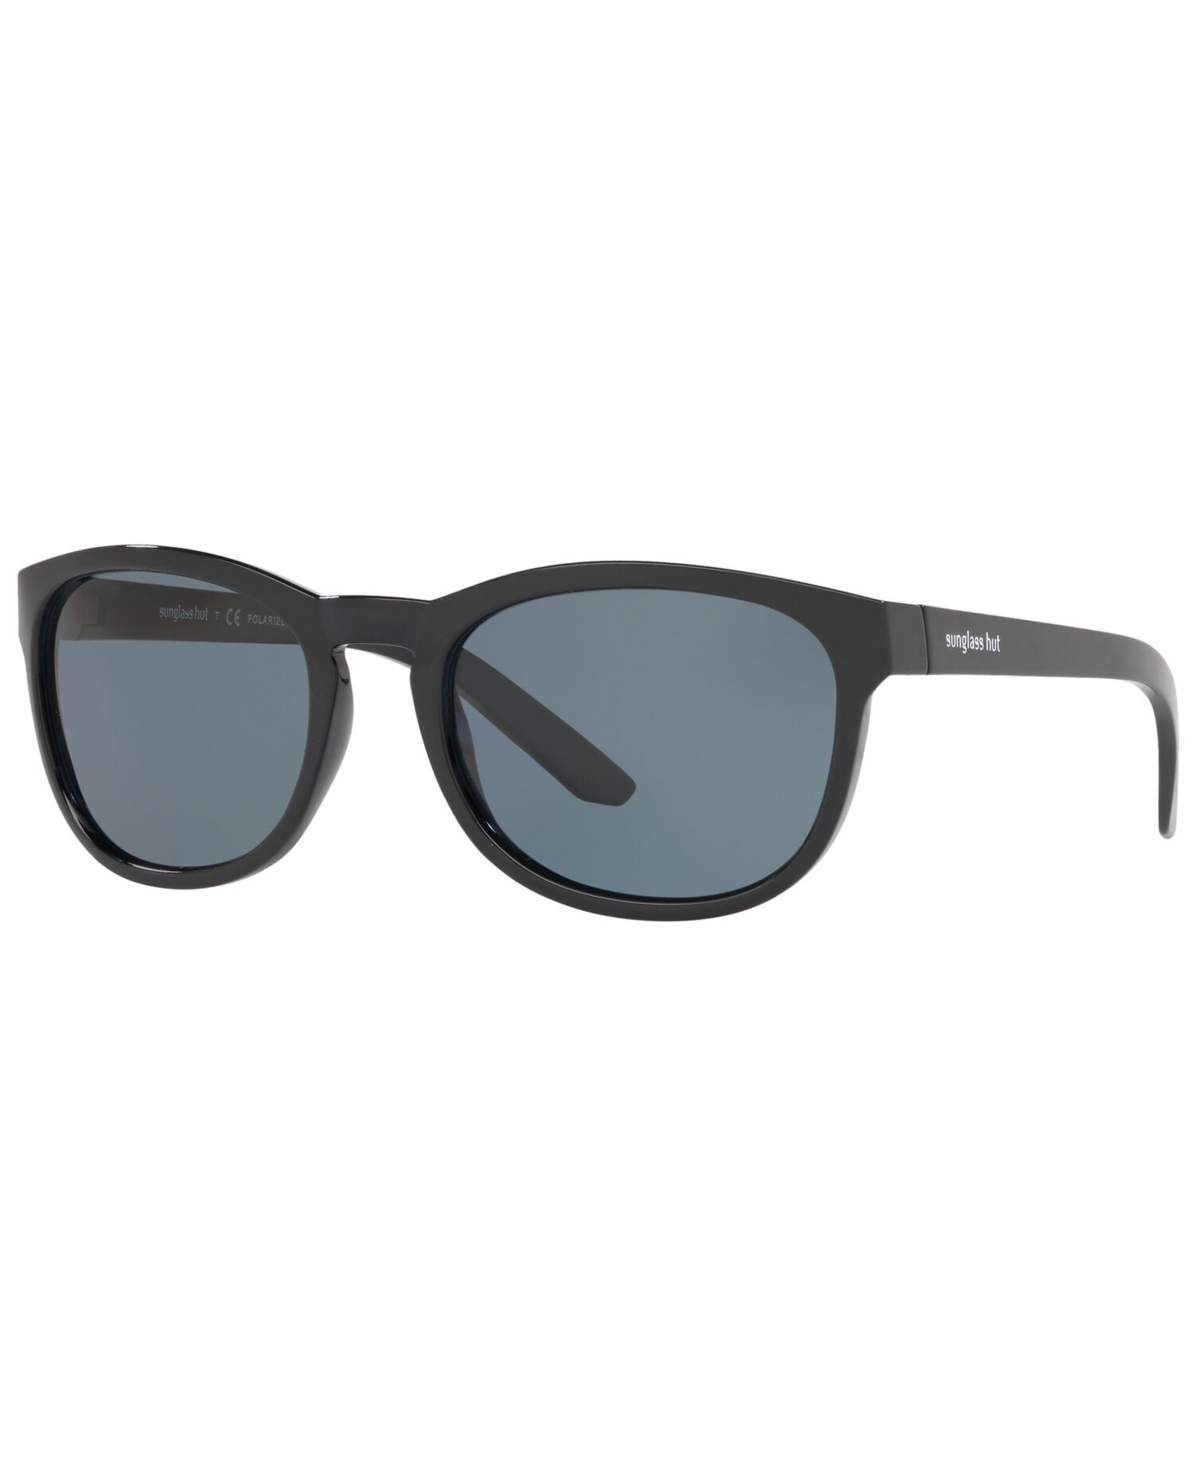 Men's Sunglasses, HU2015 - BLACK/POLAR BLUE